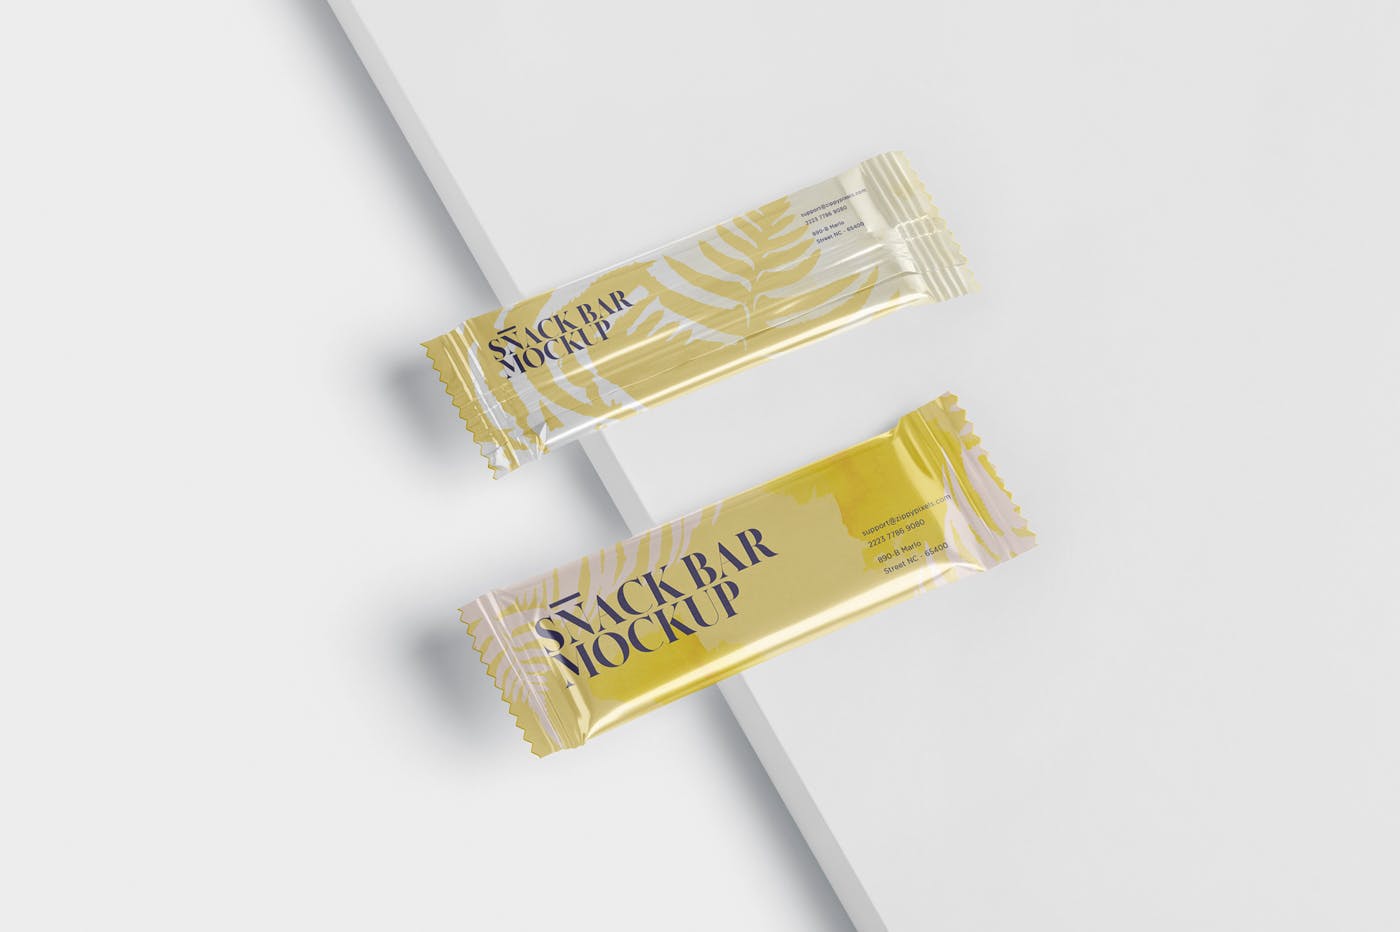 零食糖果包装袋设计效果图第一素材精选 Snack Bar Mockup – Slim Rectangular插图(3)